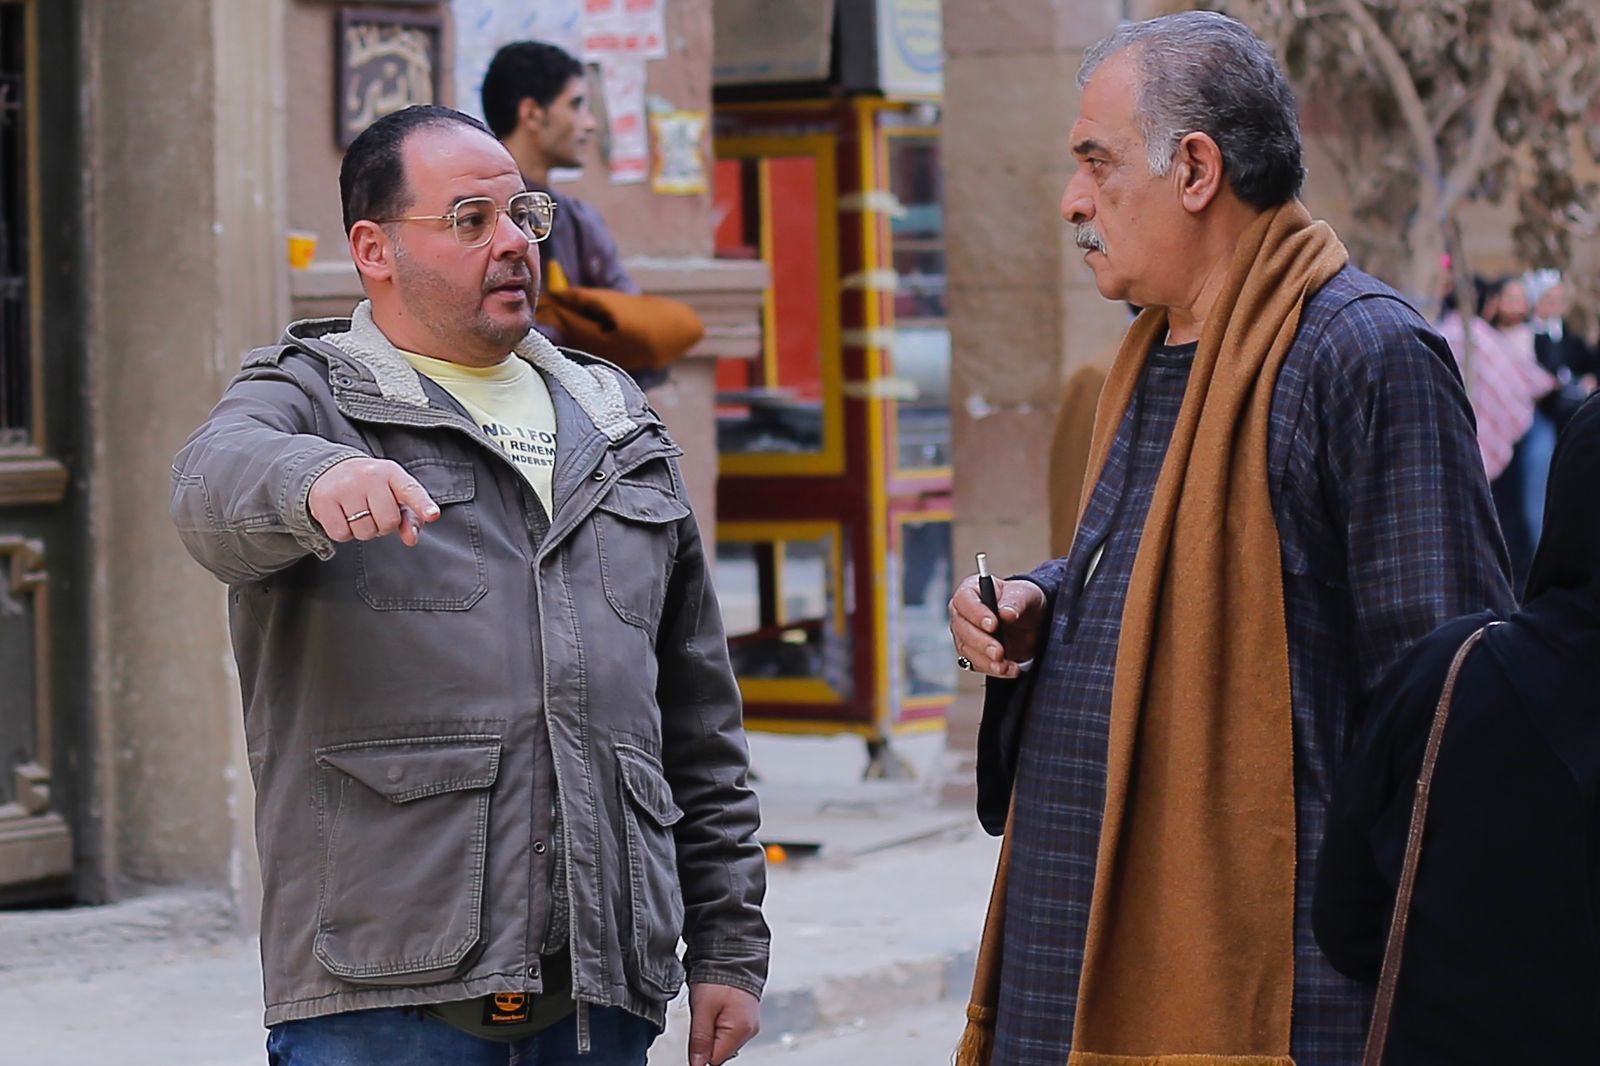 اسماعيل فاروق ننتهي من تصوير مسلسل حق عرب خلال أيام (4)